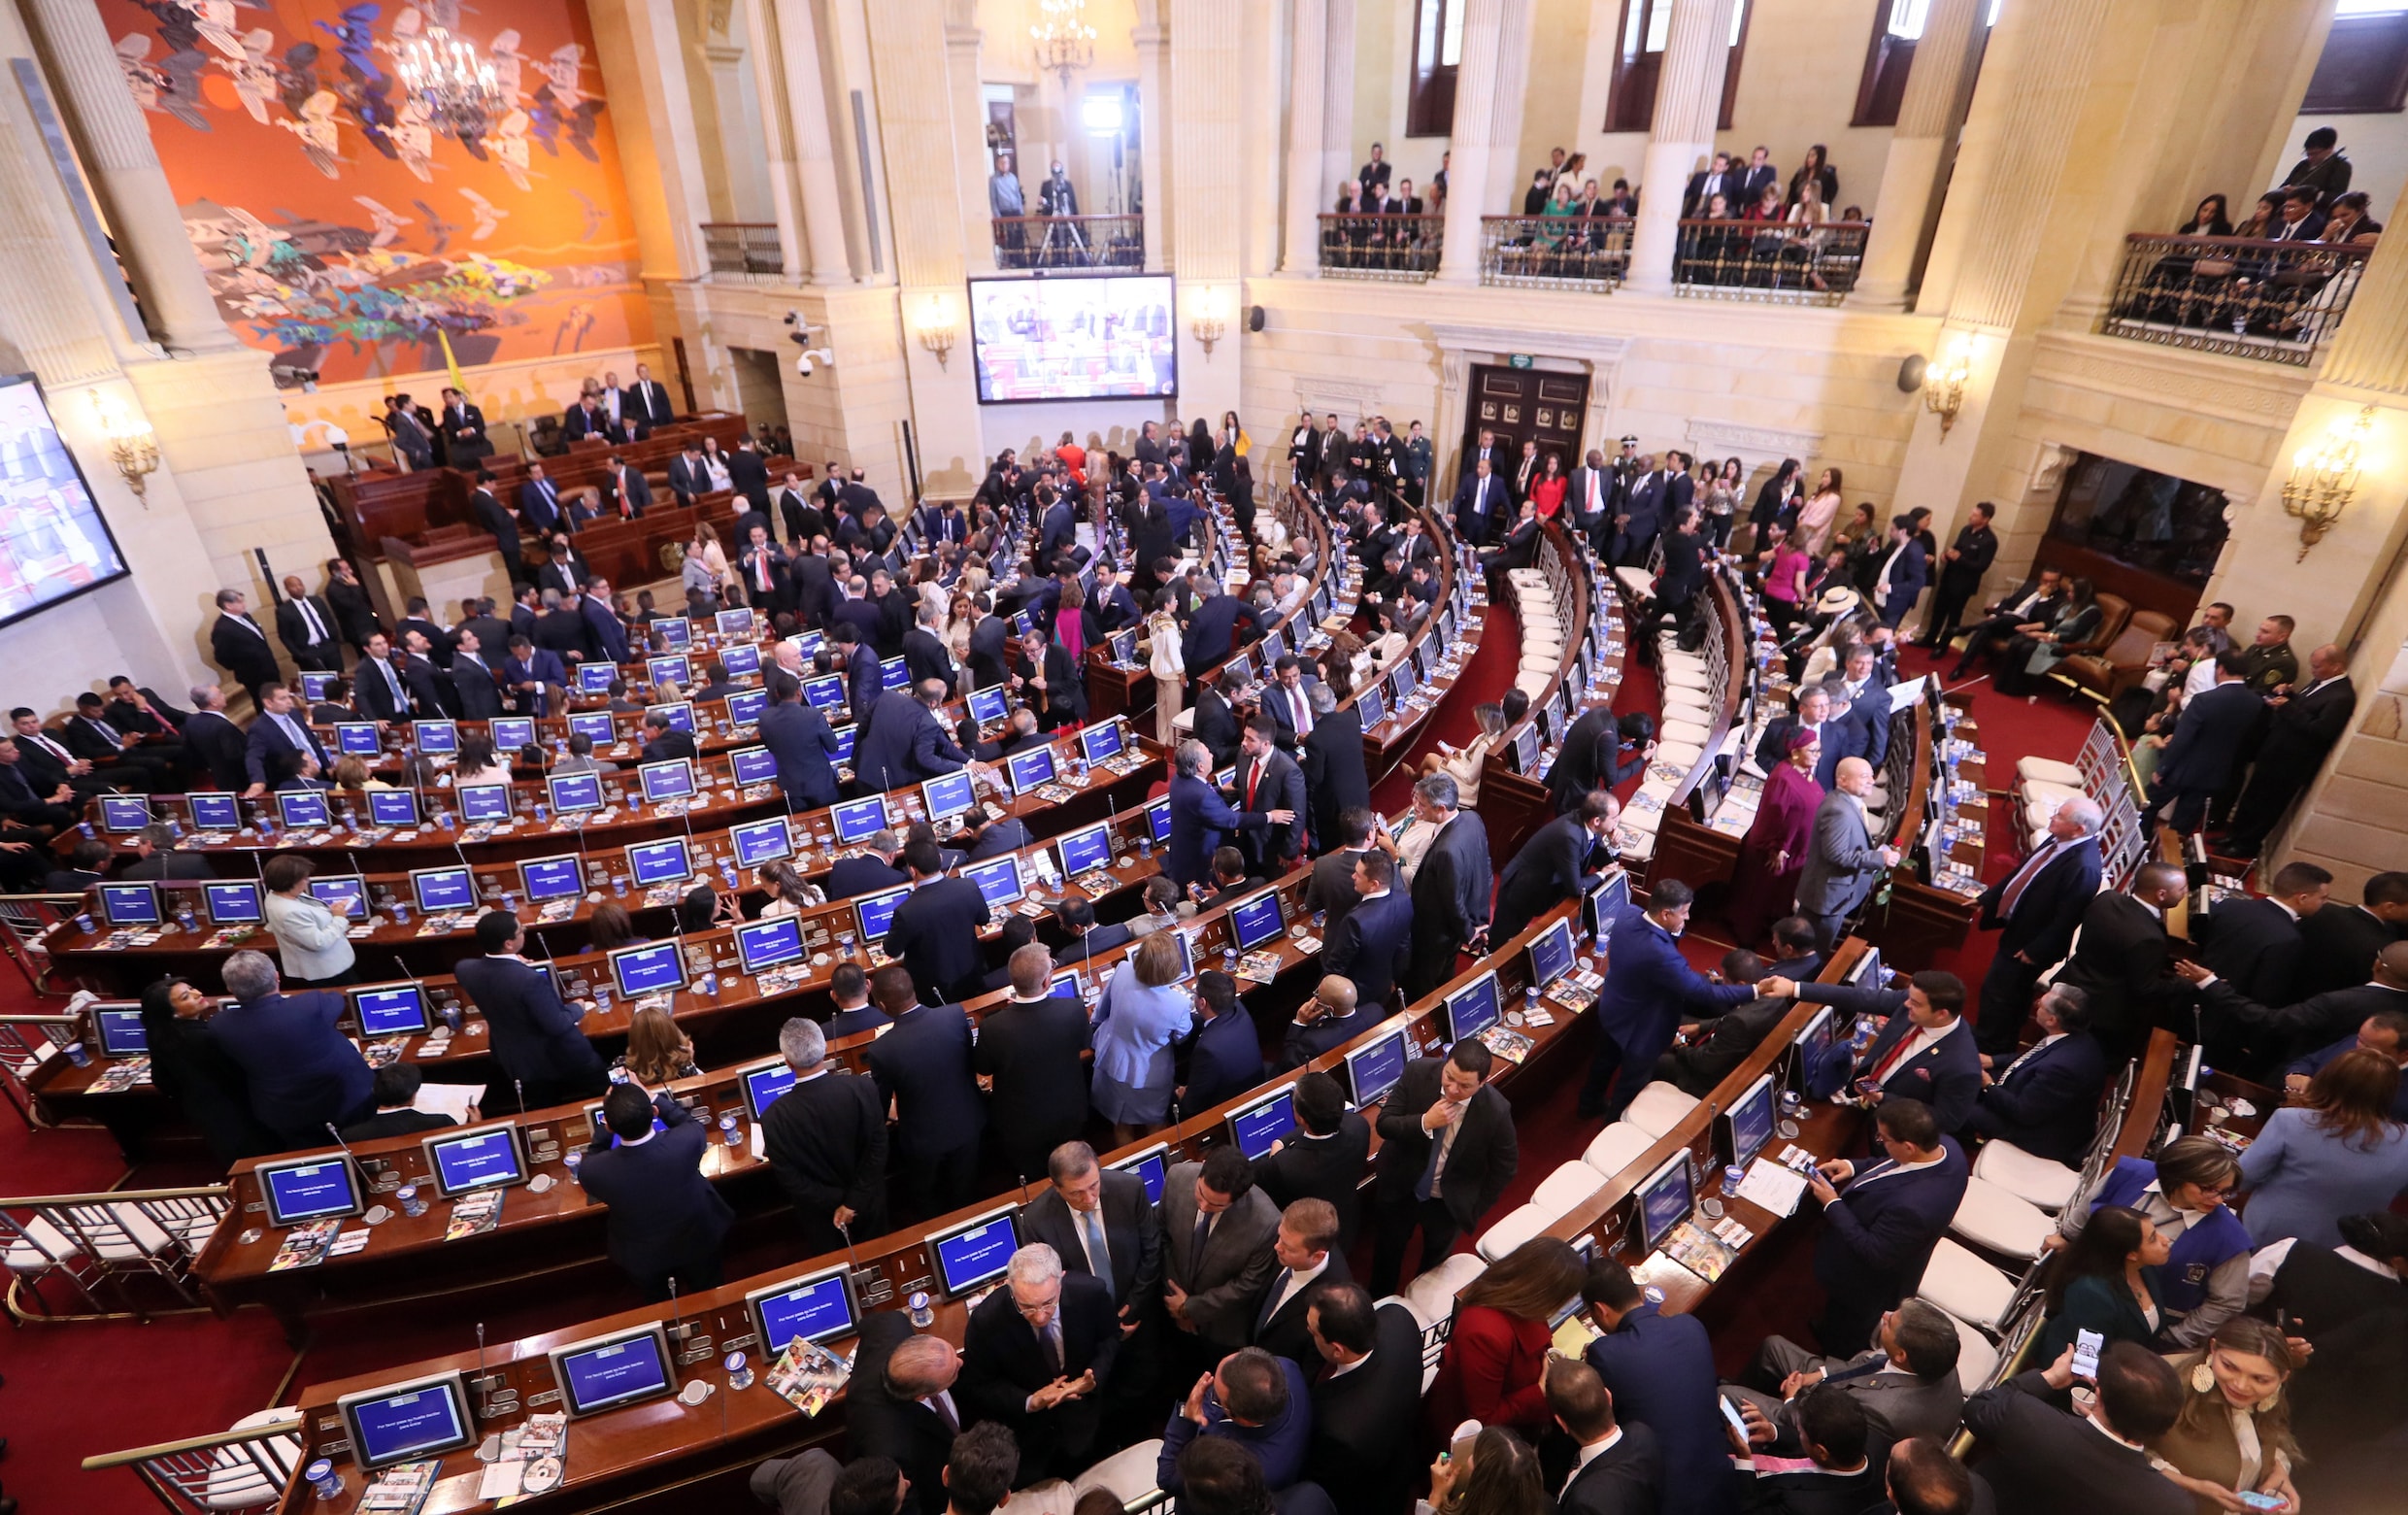 Voormalige FARC-rebellen nemen plaats in Colombiaans parlement